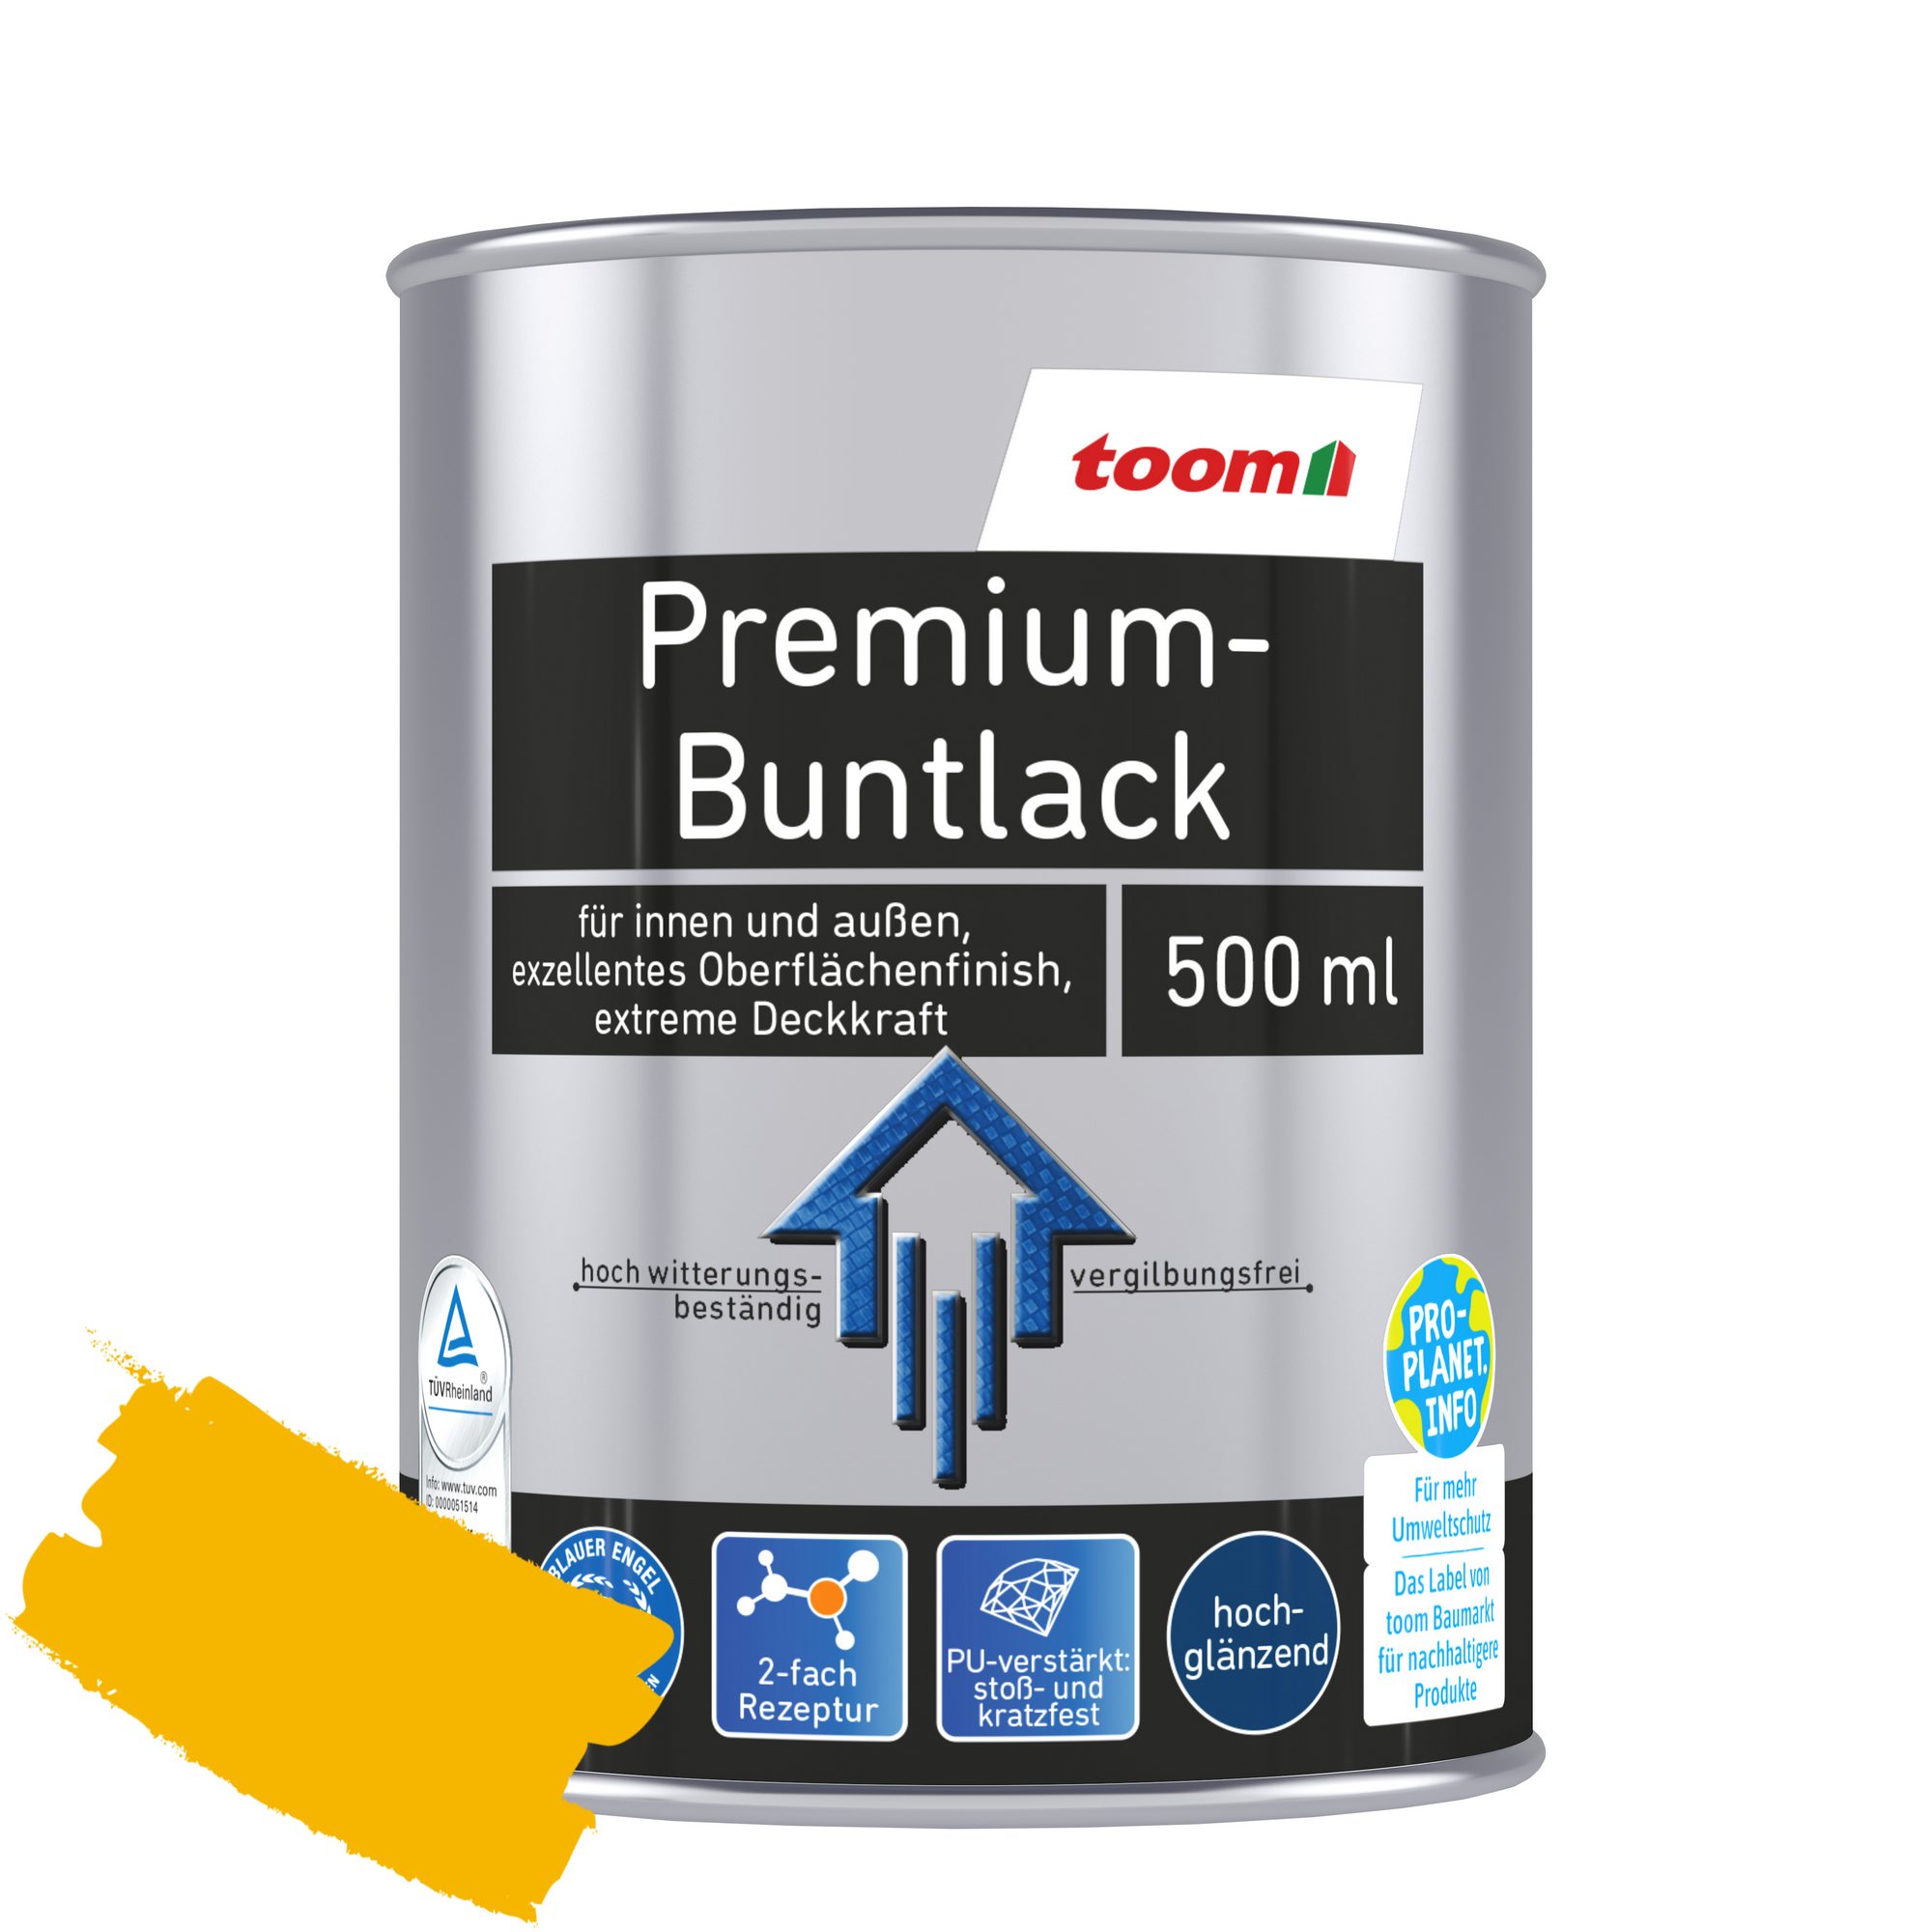 Premium-Buntlack rapsgelb glänzend 500 ml + product picture